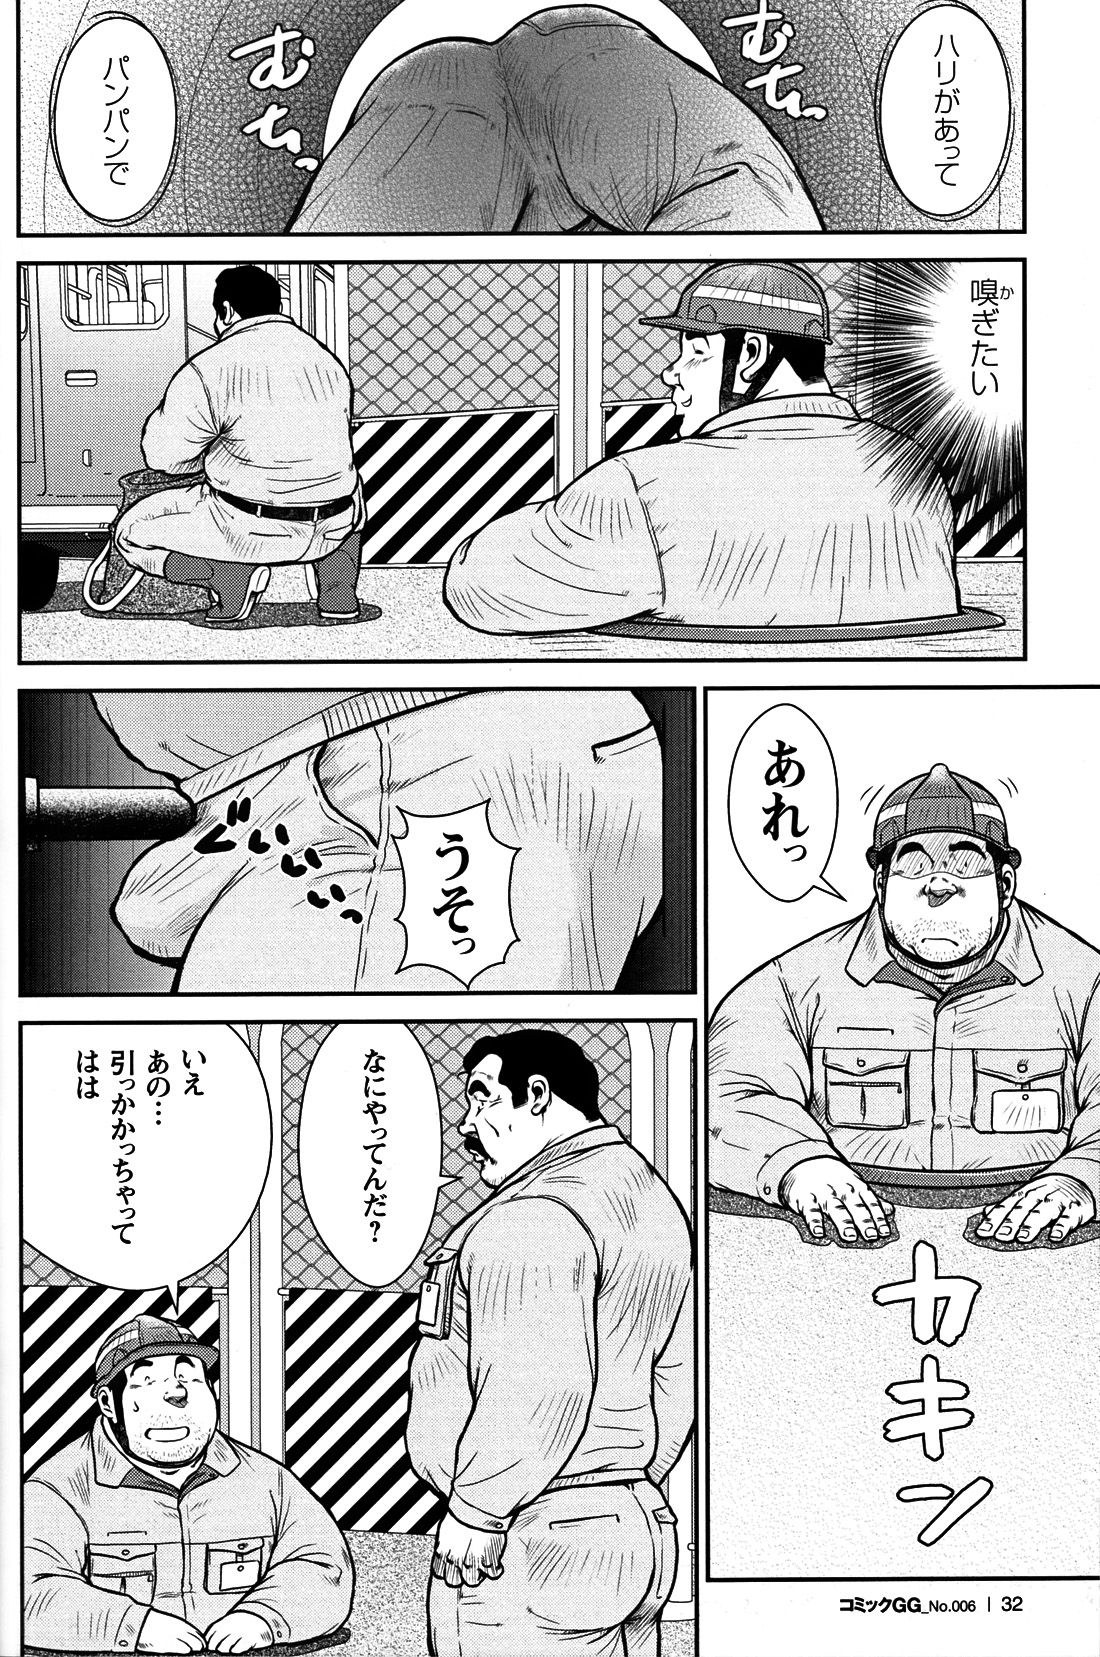 Comic G-men Gaho No. 06 Nikutai Roudousha page 29 full